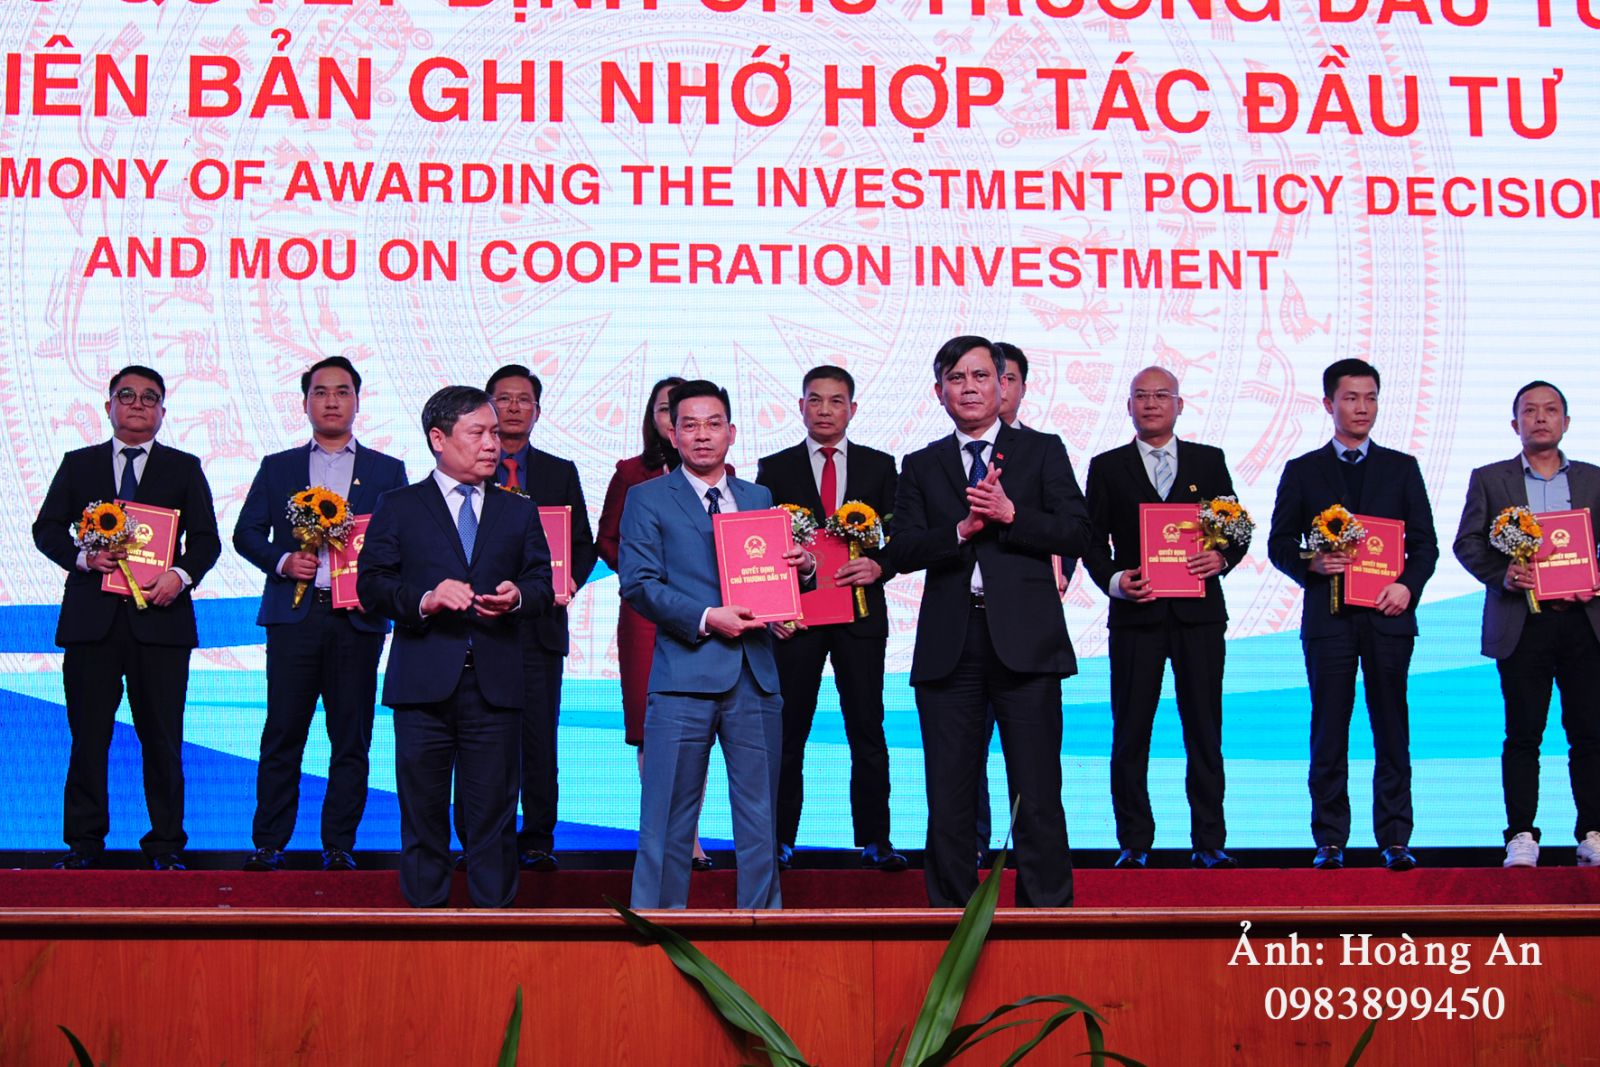 Hội nghị xúc tiến đầu tư năm 2021, Lãnh đạo tỉnh Quảng Bình đã trao quyết định chủ trương đầu tư và biên bản ghi nhớ hợp tác đầu tư cho 28 nhà đầu tư thực hiện 35 dự án với tổng vốn đăng ký hơn 92.000 tỷ đồng.